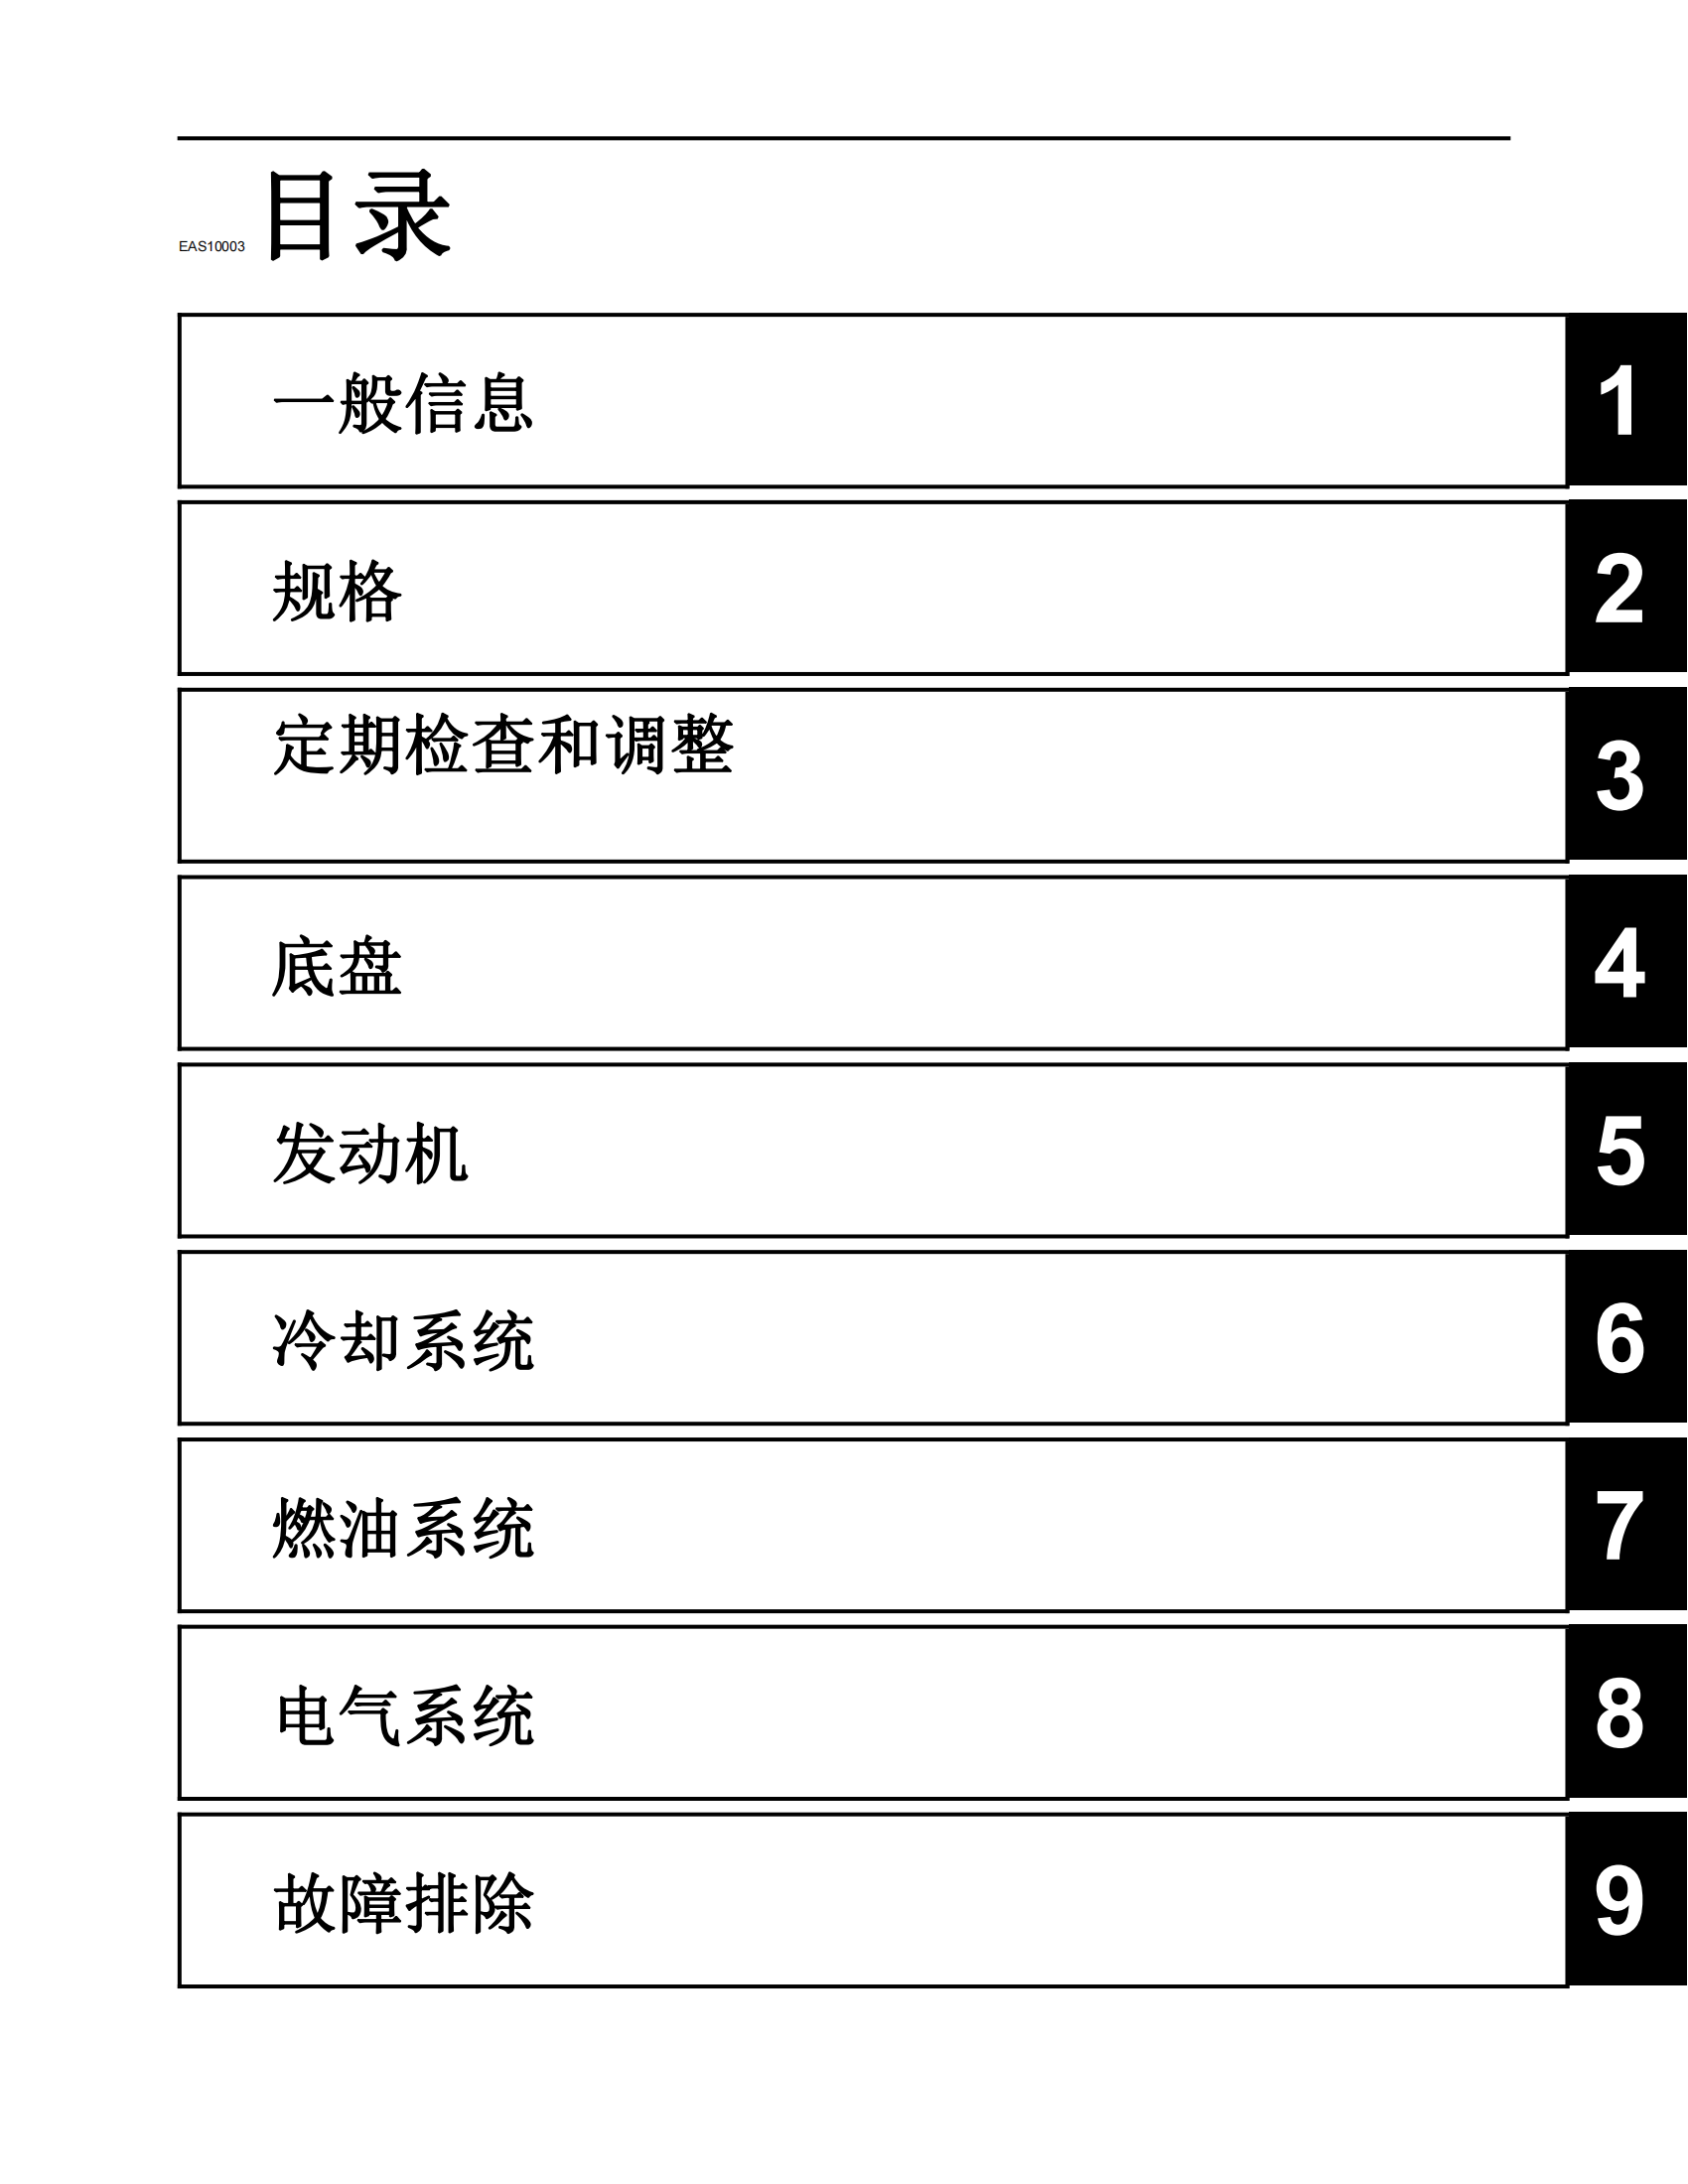 简体中文2014-2015年雅马哈fz07维修手册适用于同年份mt07维修手册插图1